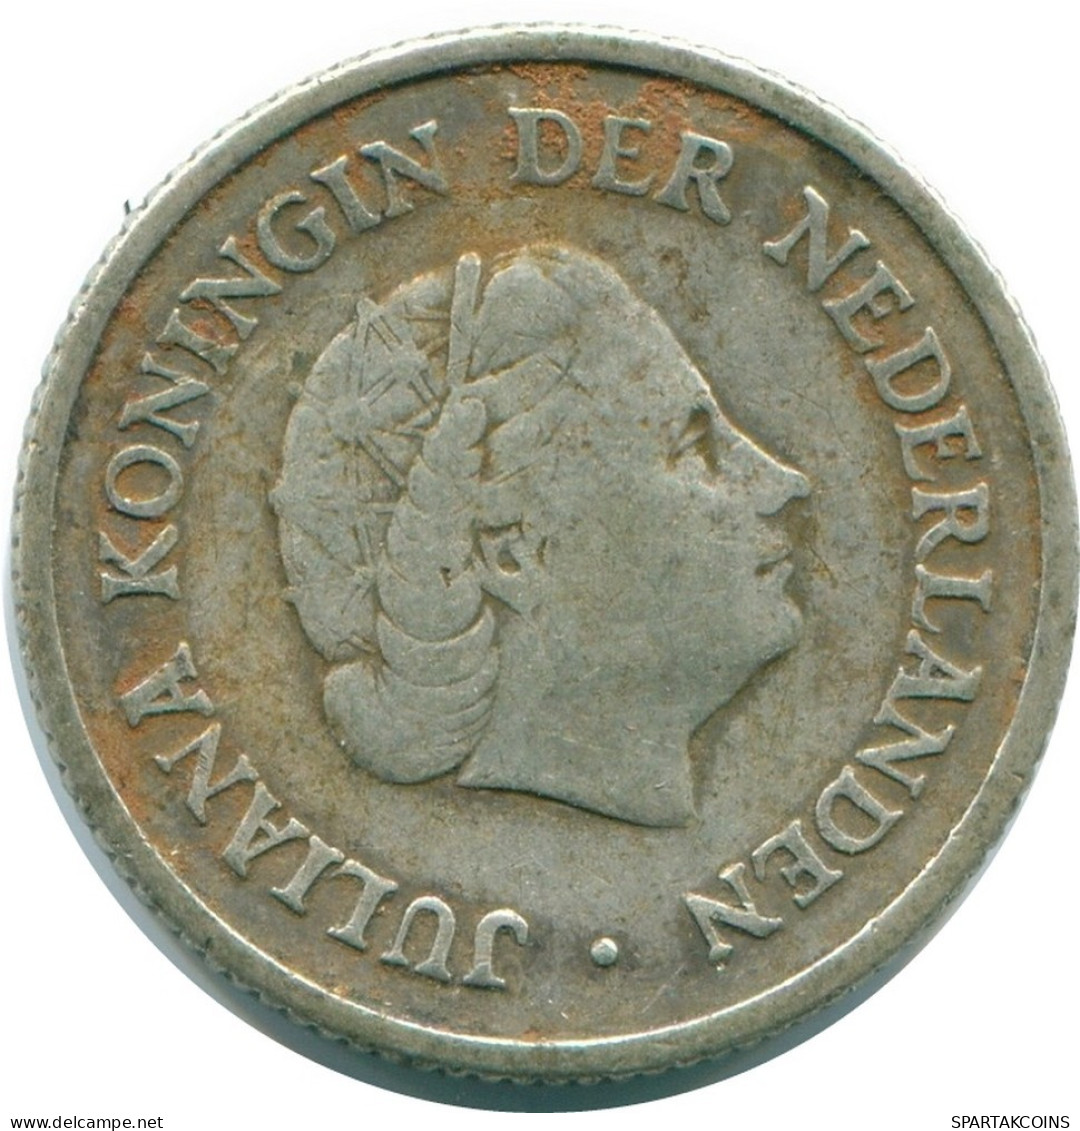 1/4 GULDEN 1954 NIEDERLÄNDISCHE ANTILLEN SILBER Koloniale Münze #NL10901.4.D.A - Nederlandse Antillen